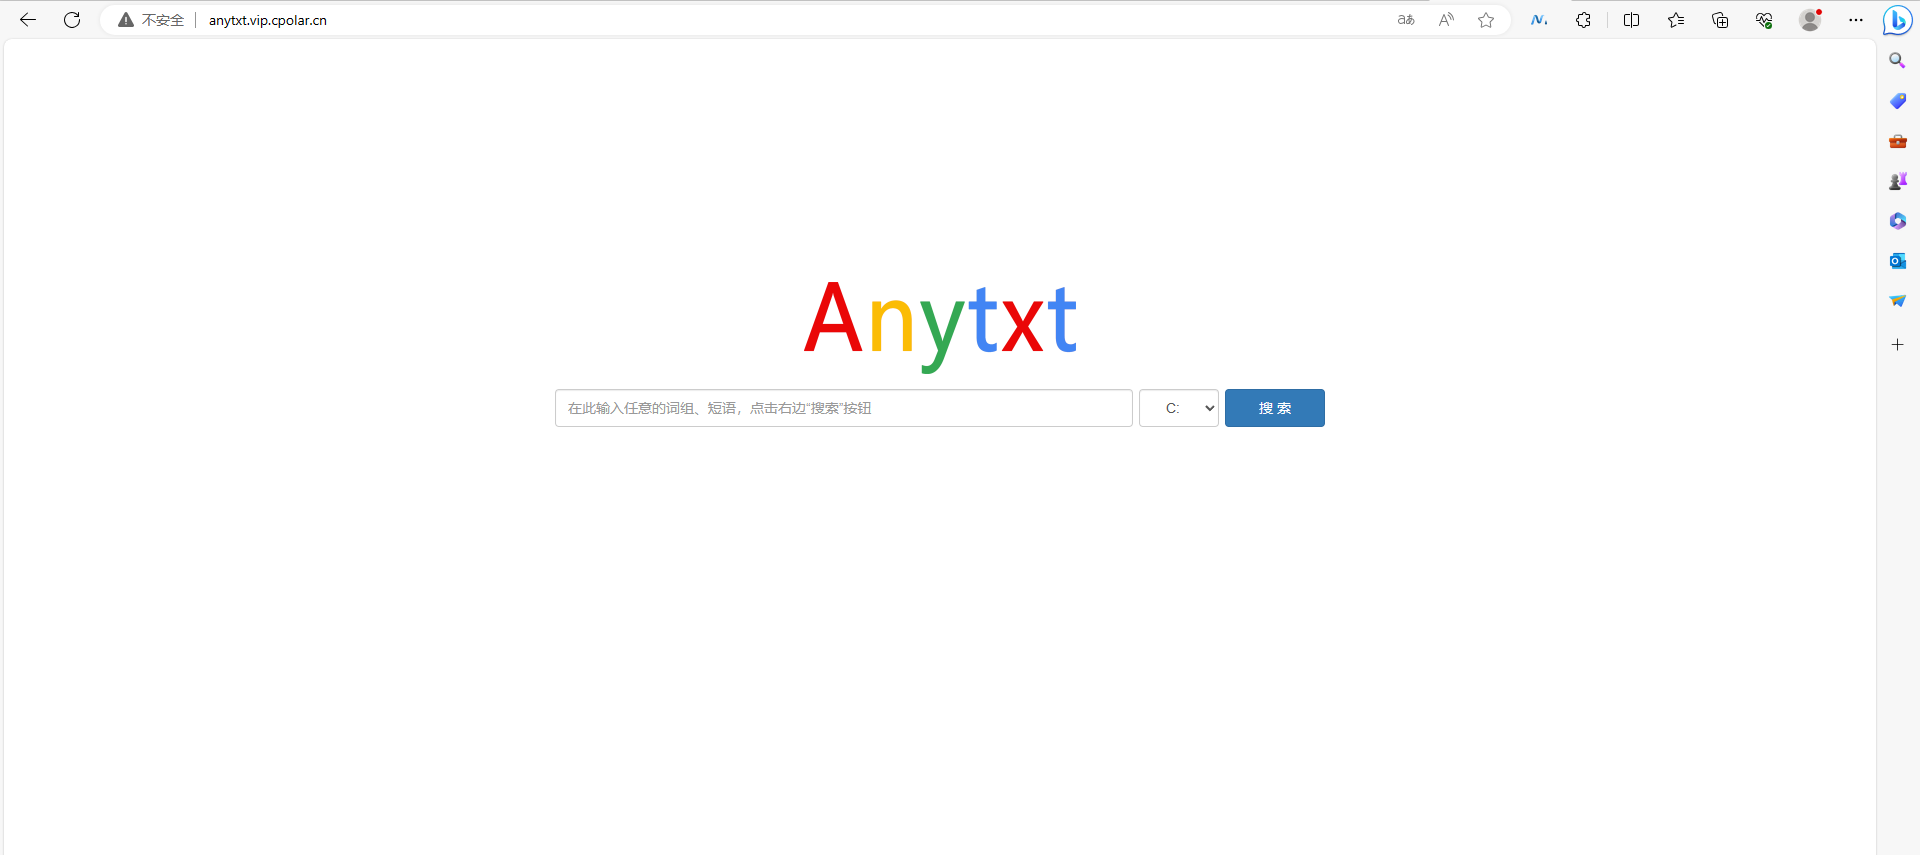 超强文档搜索引擎AnyTXT Searcher本地搭建